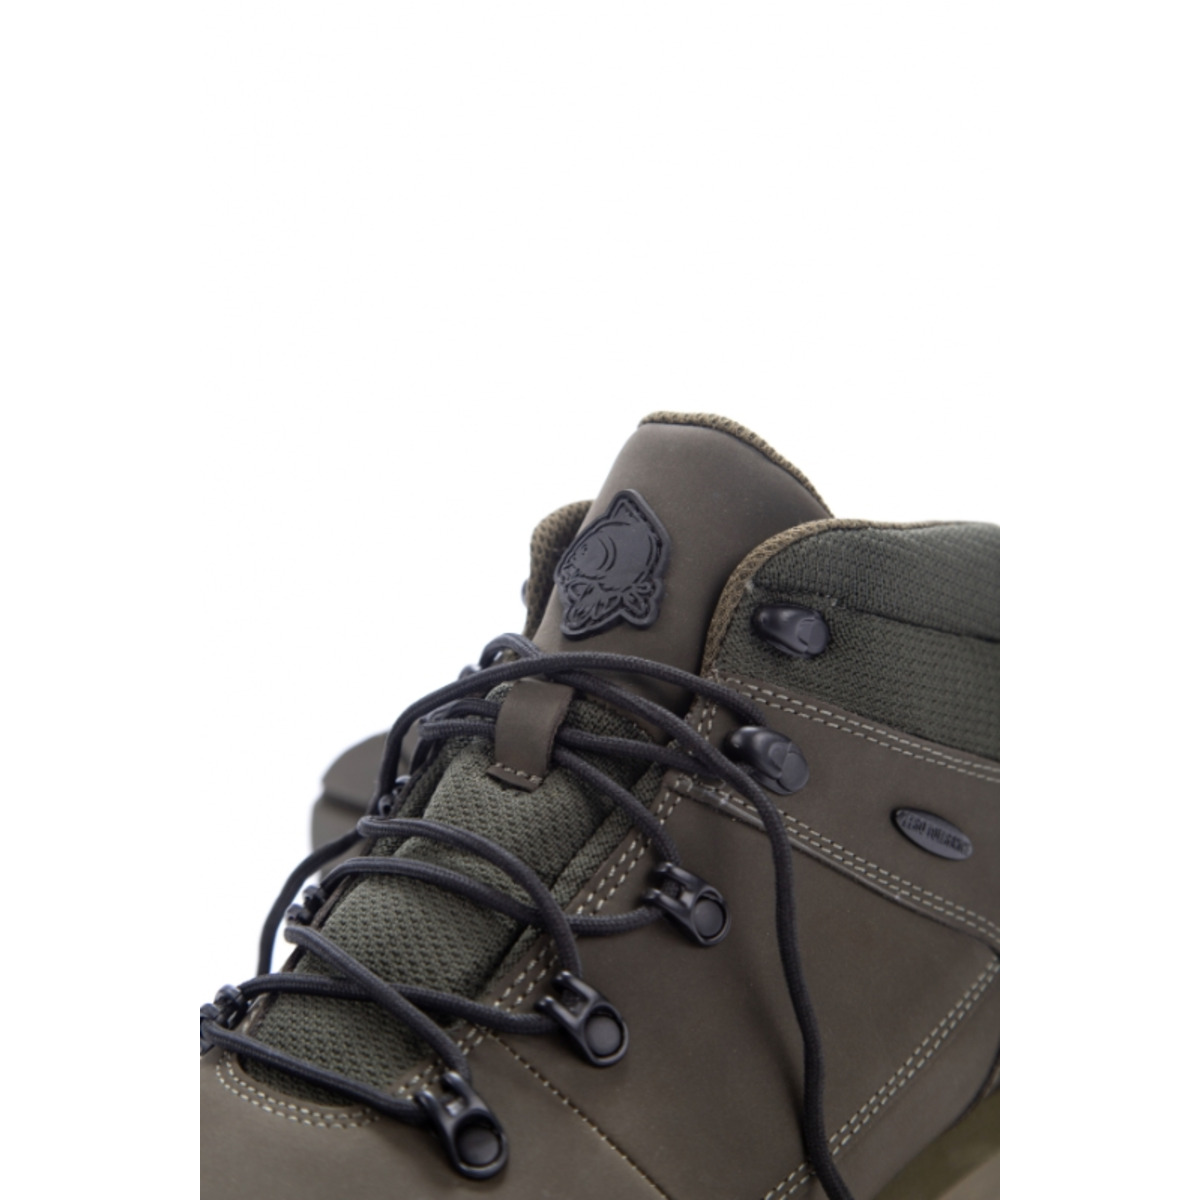 Nash Zt Trail Boots - Size 7 (41)